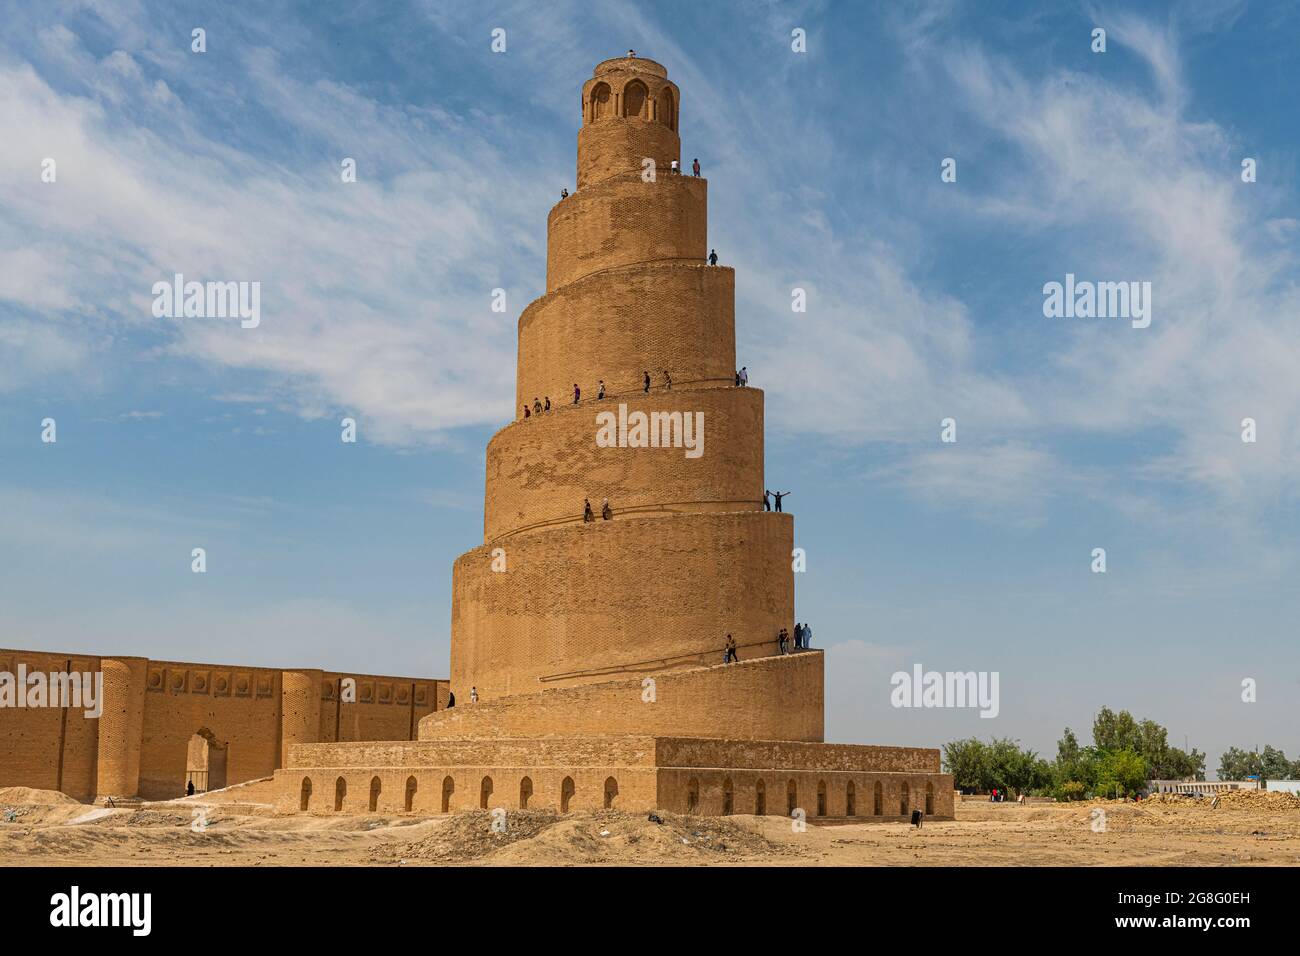 Minaret en spirale de la Grande Mosquée de Samarra, site classé au patrimoine mondial de l'UNESCO, Samarra, Irak, Moyen-Orient Banque D'Images